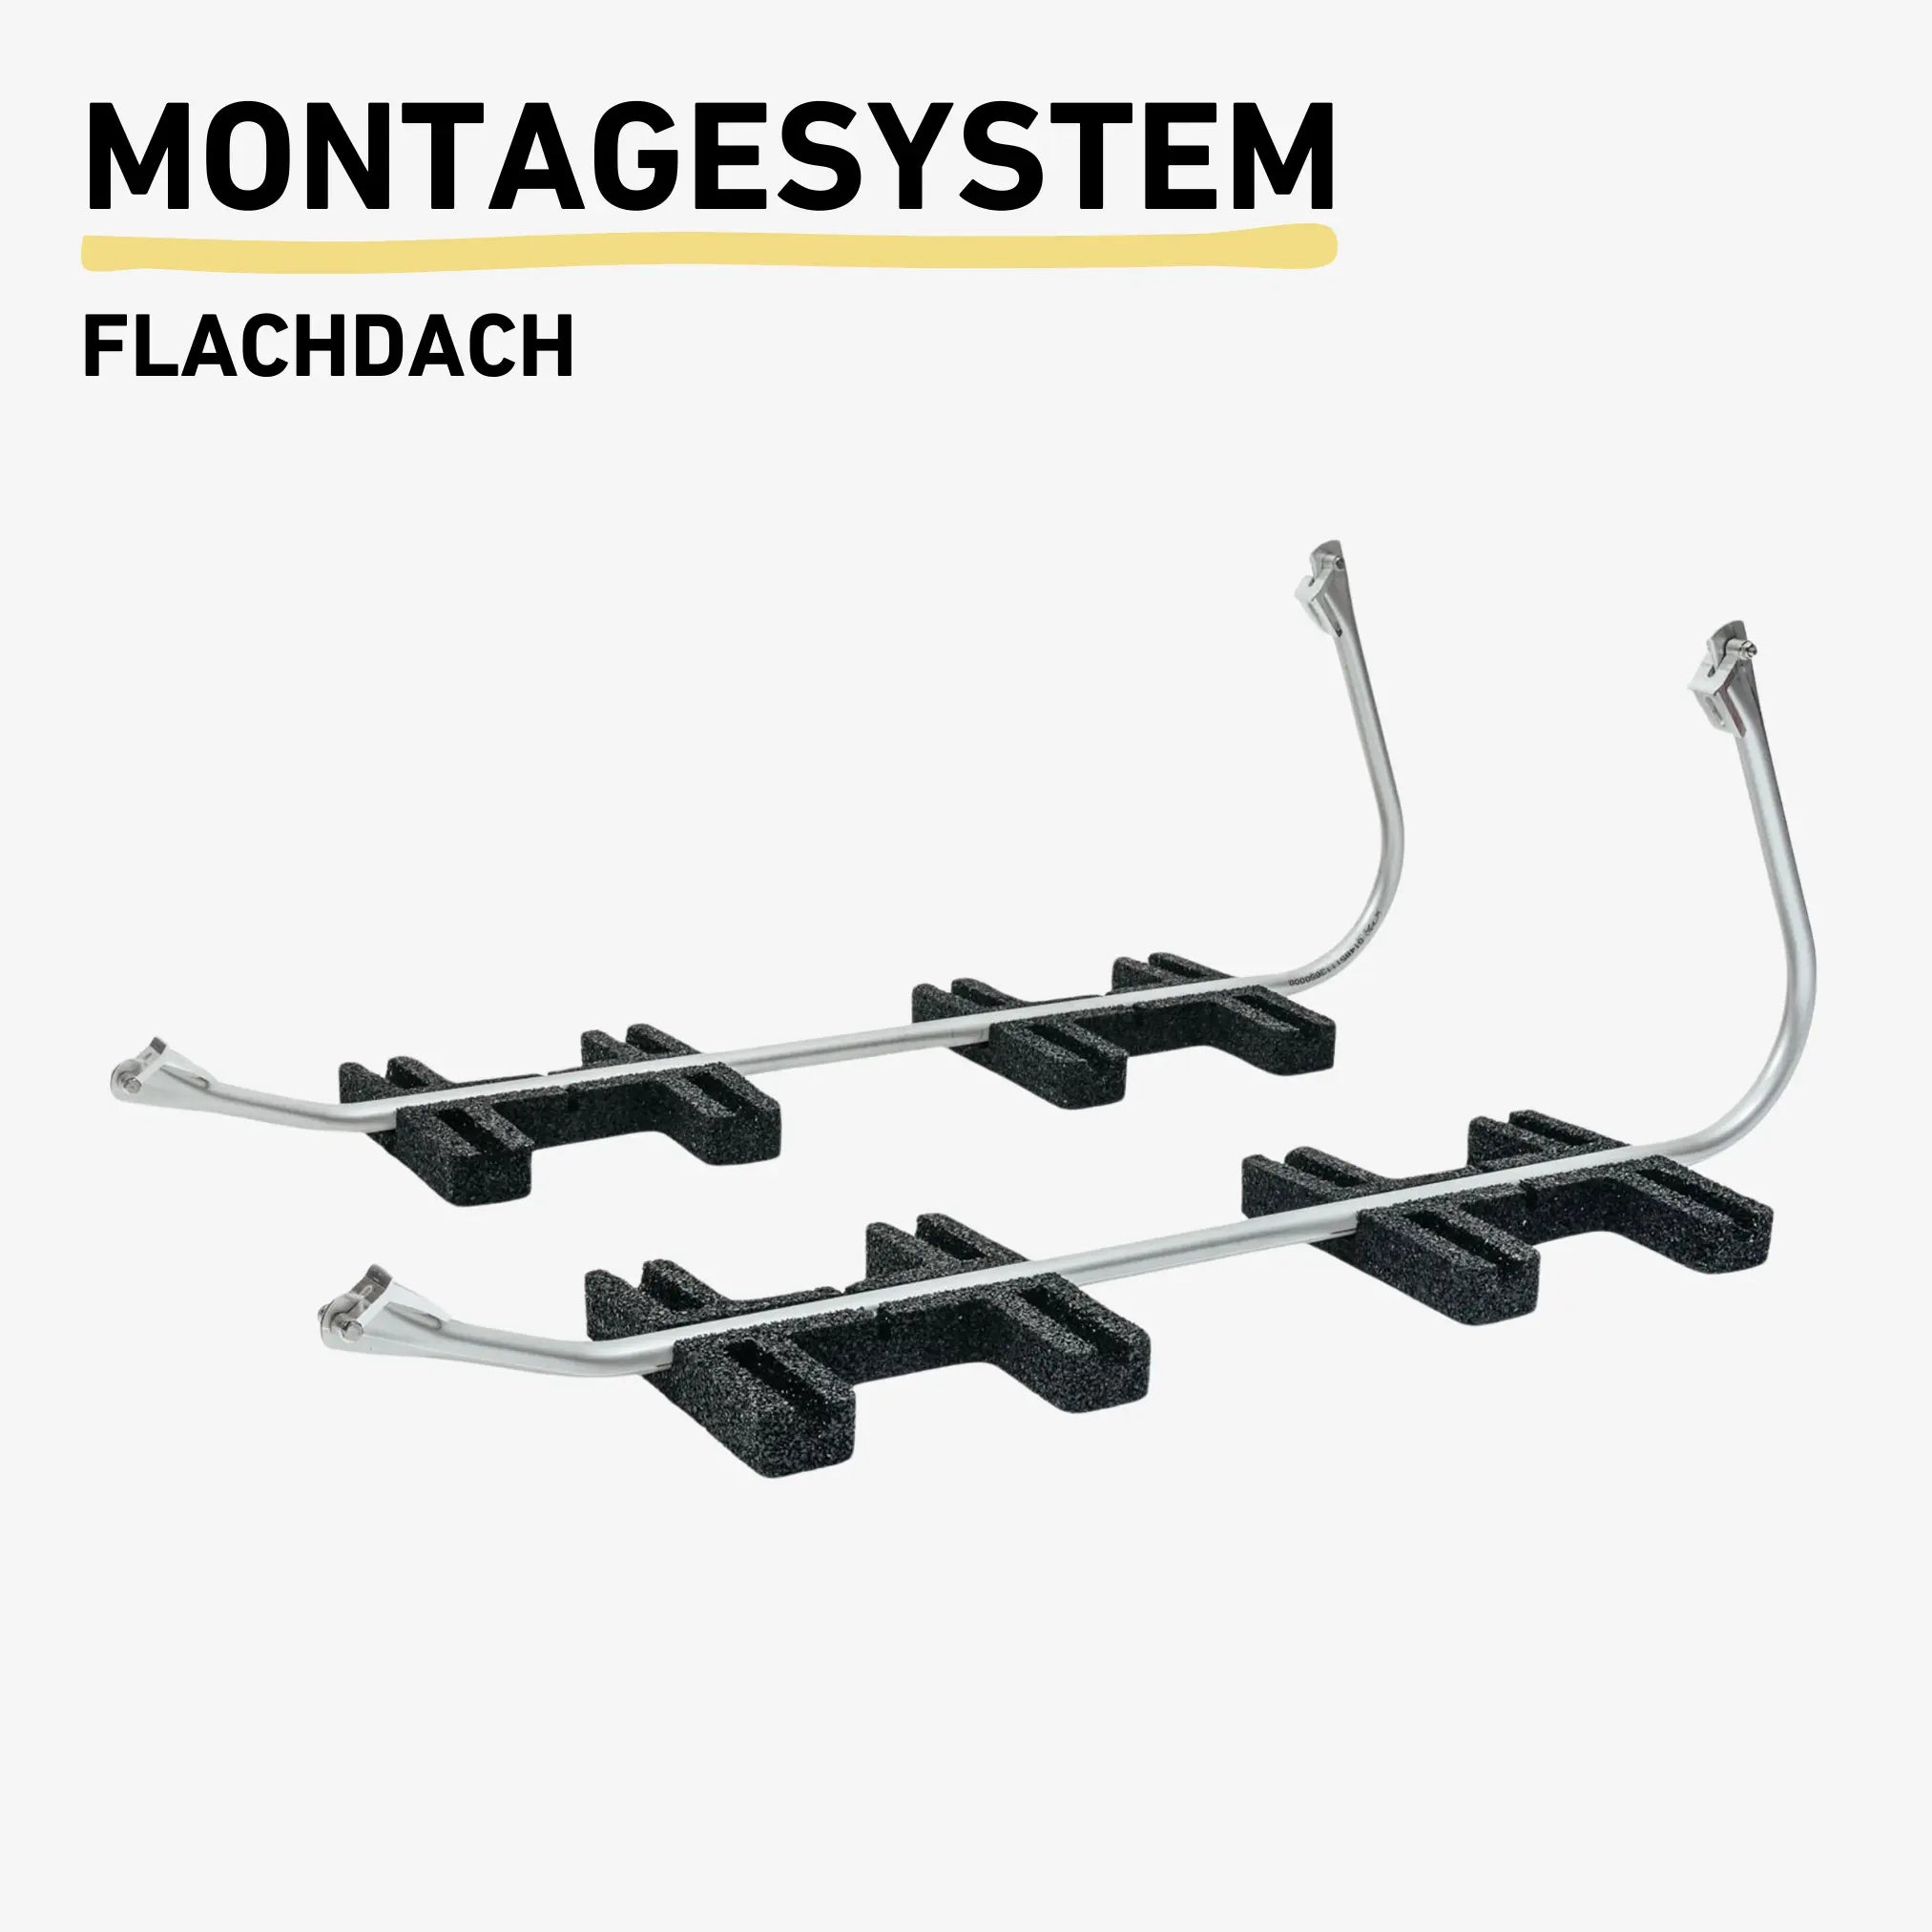 Balkonkraftwerk Montagesystem Flachdach Produktbild Darstellung